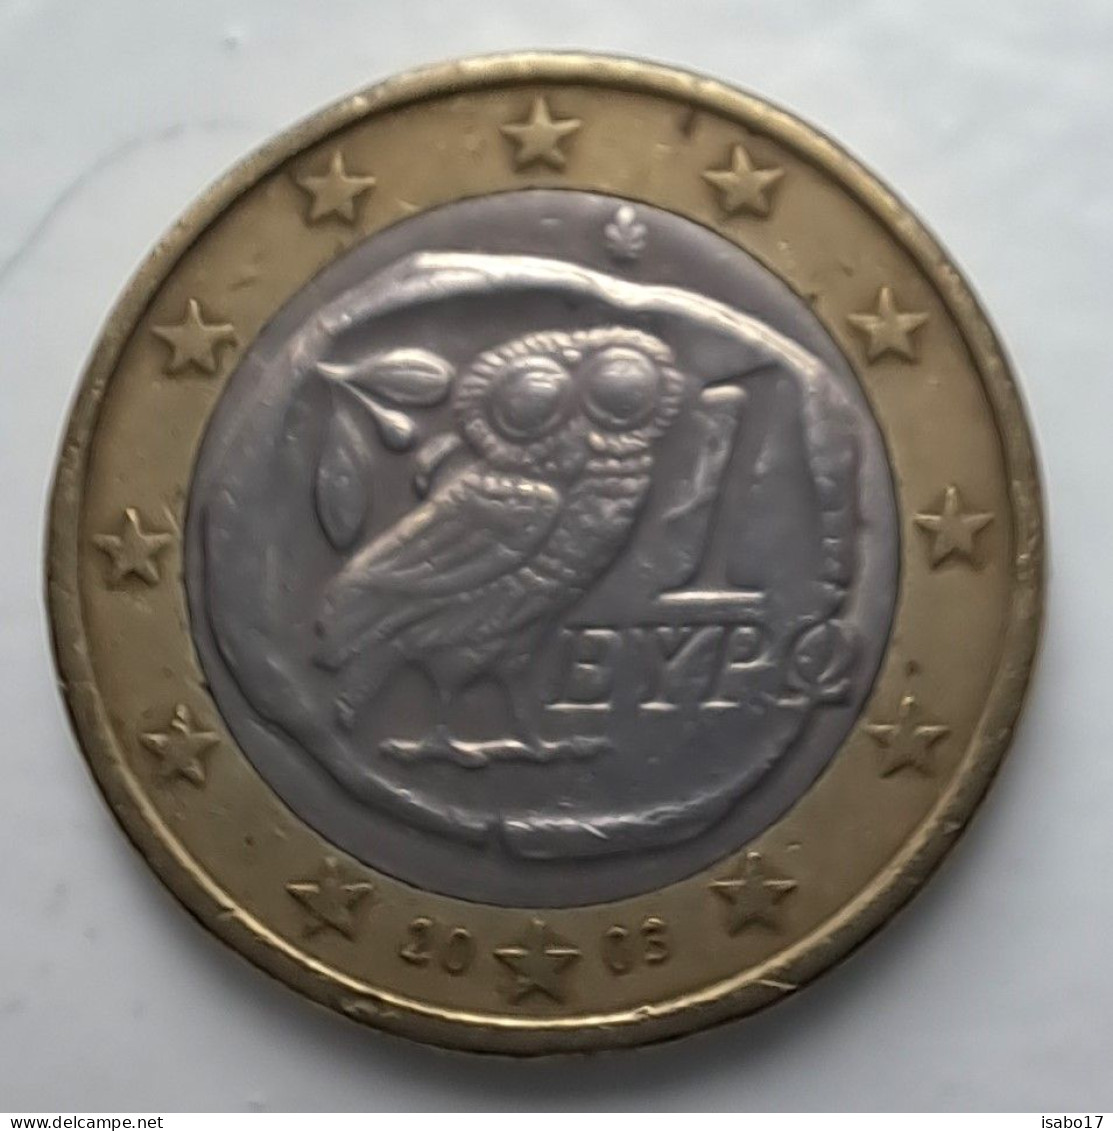 1 Euro GRIECHENLAND 2003 - Griechenland